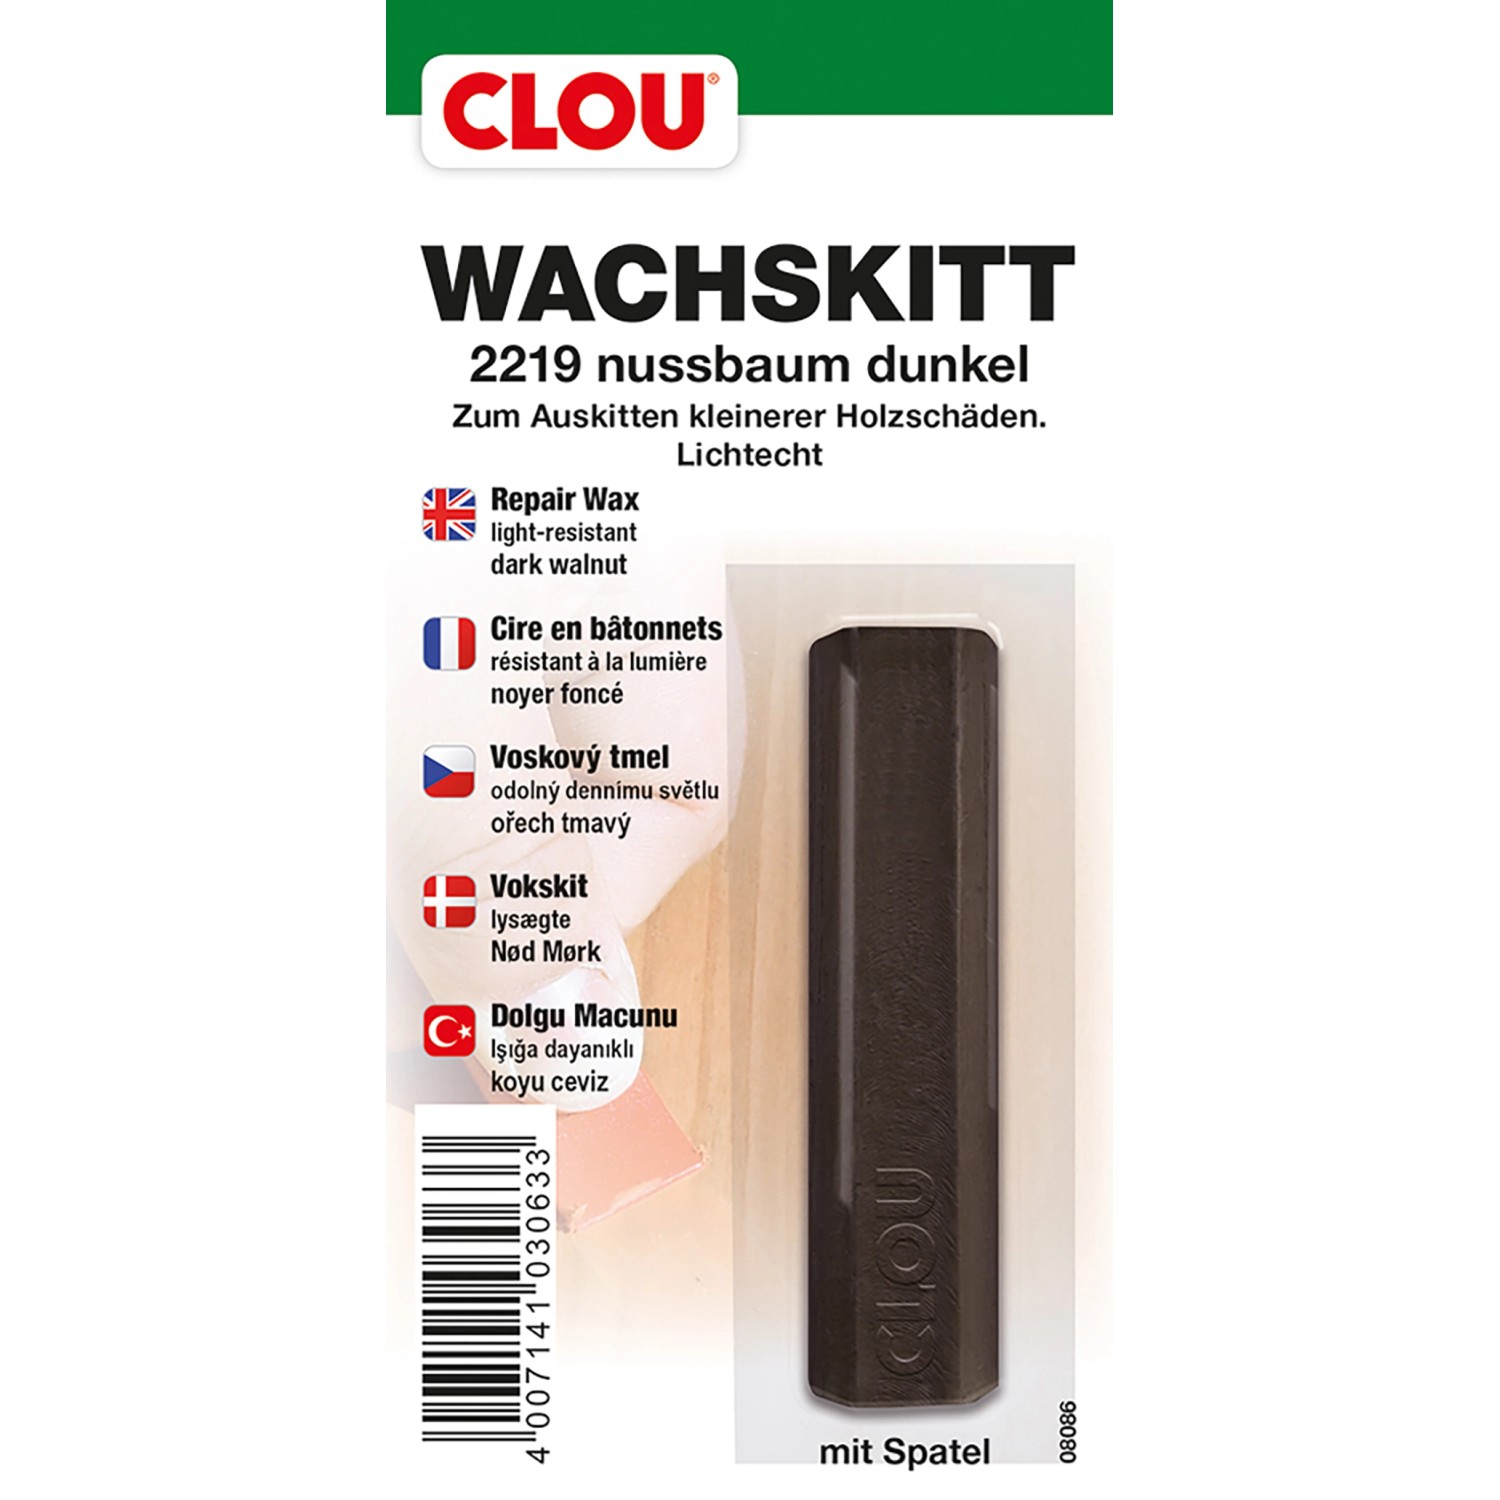 Clou Wachskitt Nussbaum Dunkel 15 g